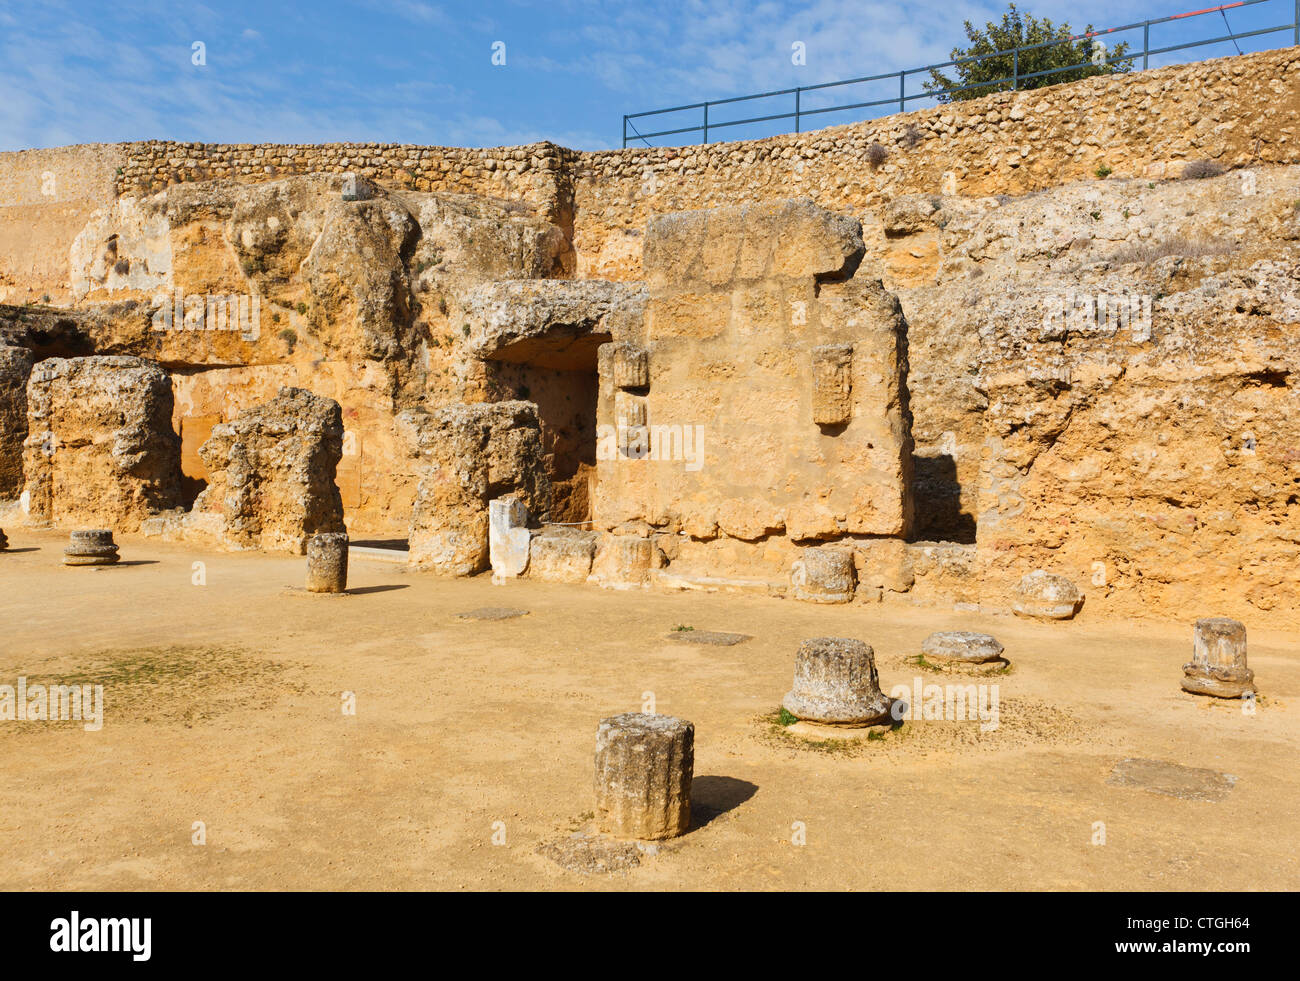 El complejo arqueológico, Carmona, provincia de Sevilla, España. La Tumba de Servilia, la tumba de Servilia. Foto de stock